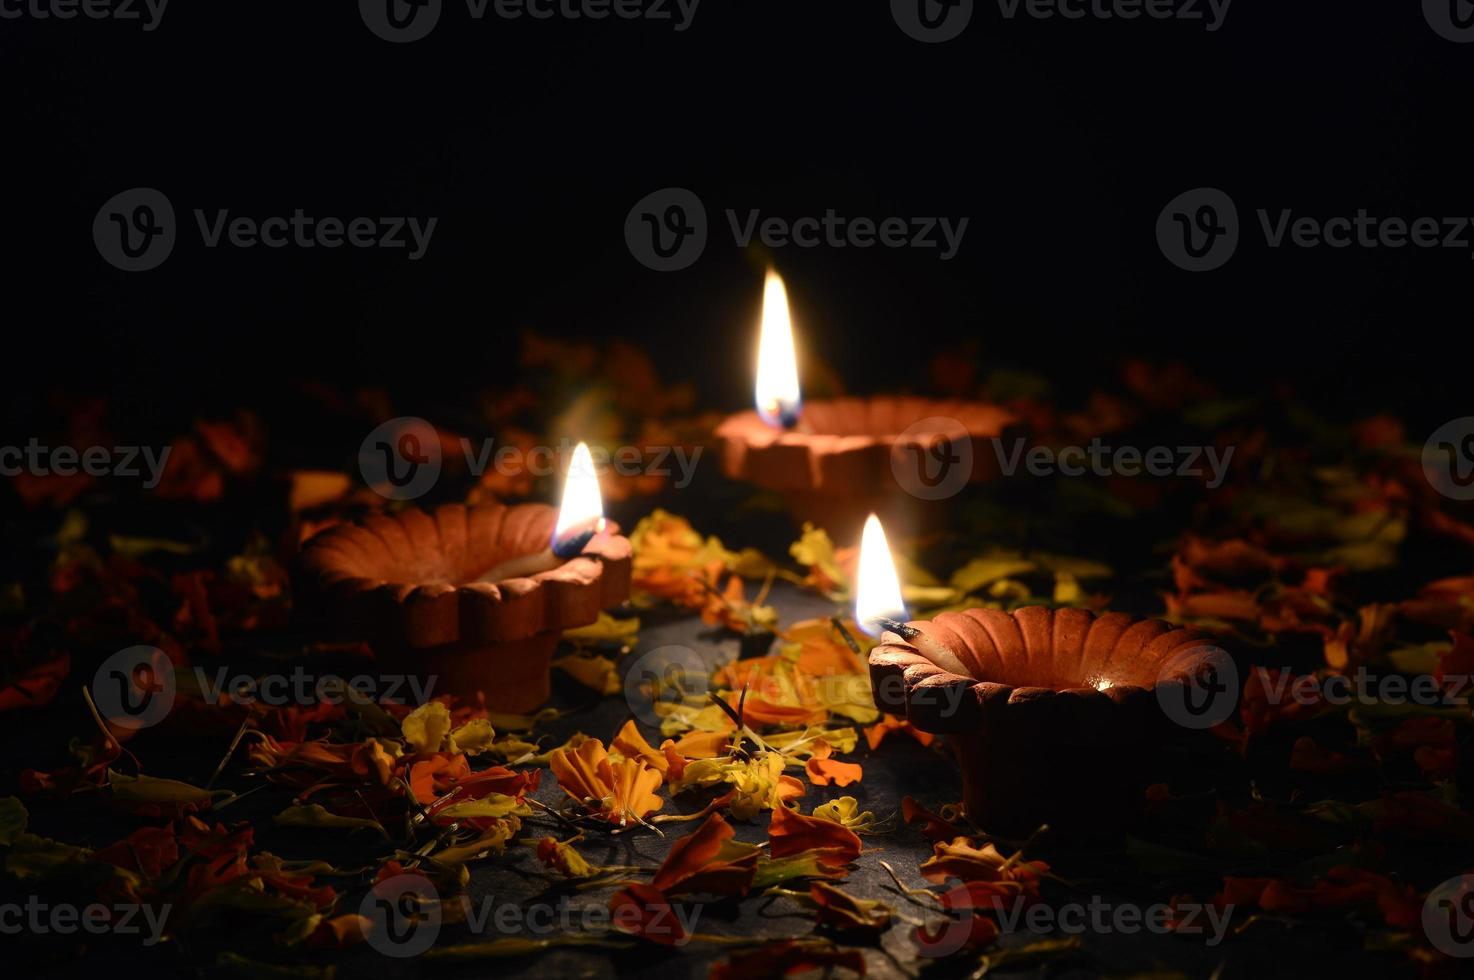 Ton-Diya-Lampen während der Diwali-Feier beleuchtet. Grußkartendesign indisches hinduistisches Lichtfestival namens Diwali foto